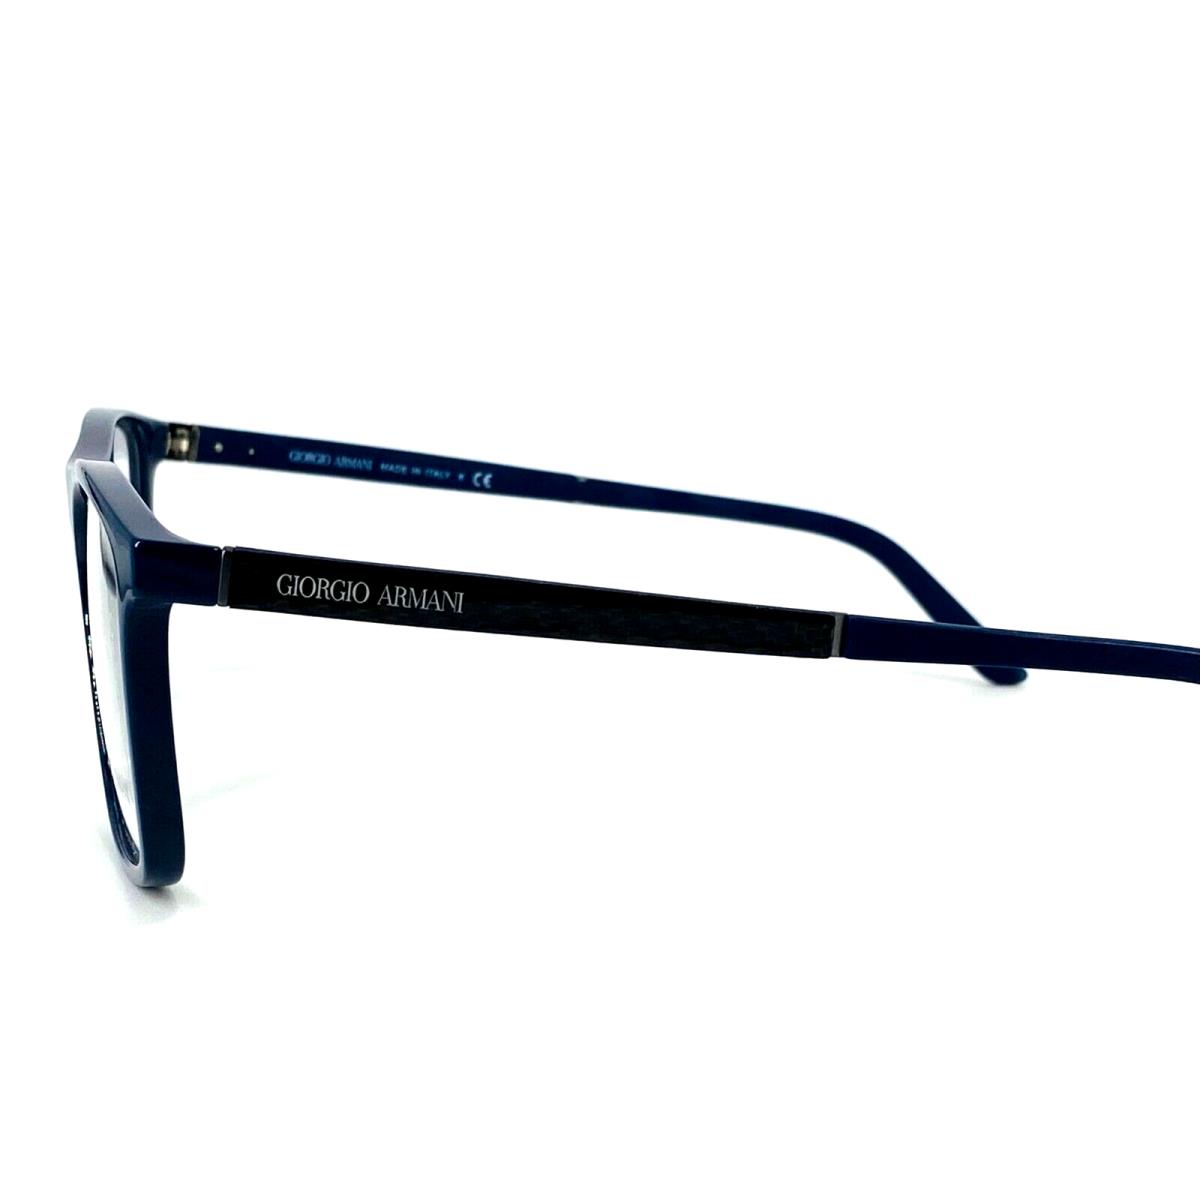 Giorgio Armani eyeglasses  - 5145 Shiny Blue , Blue Frame 1